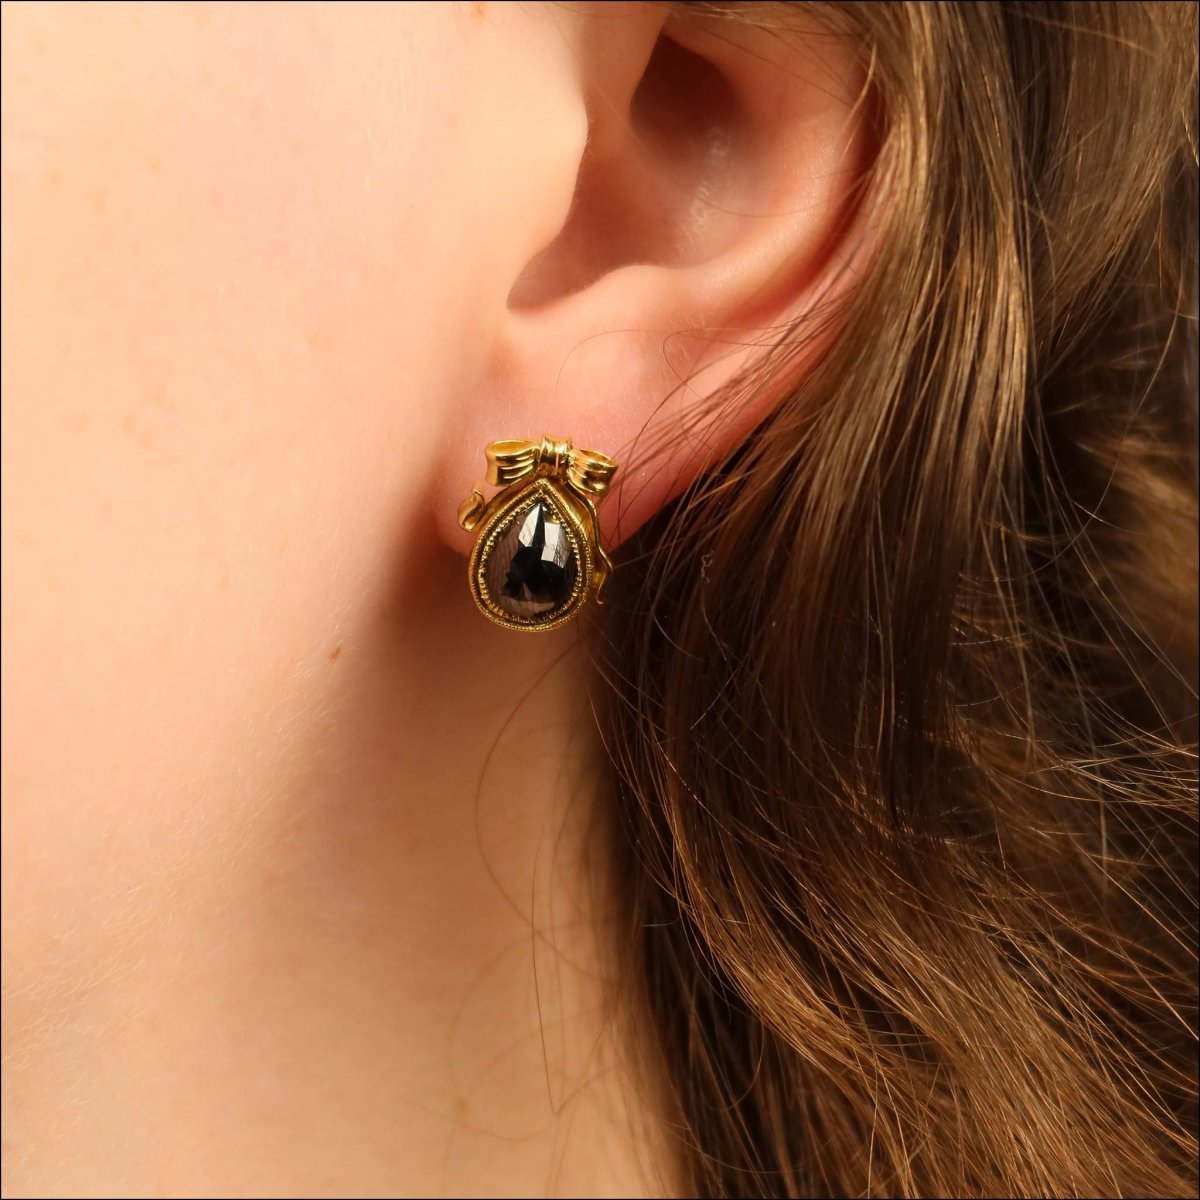 Black Diamond Bow Earrings 18KY - JewelsmithEarrings